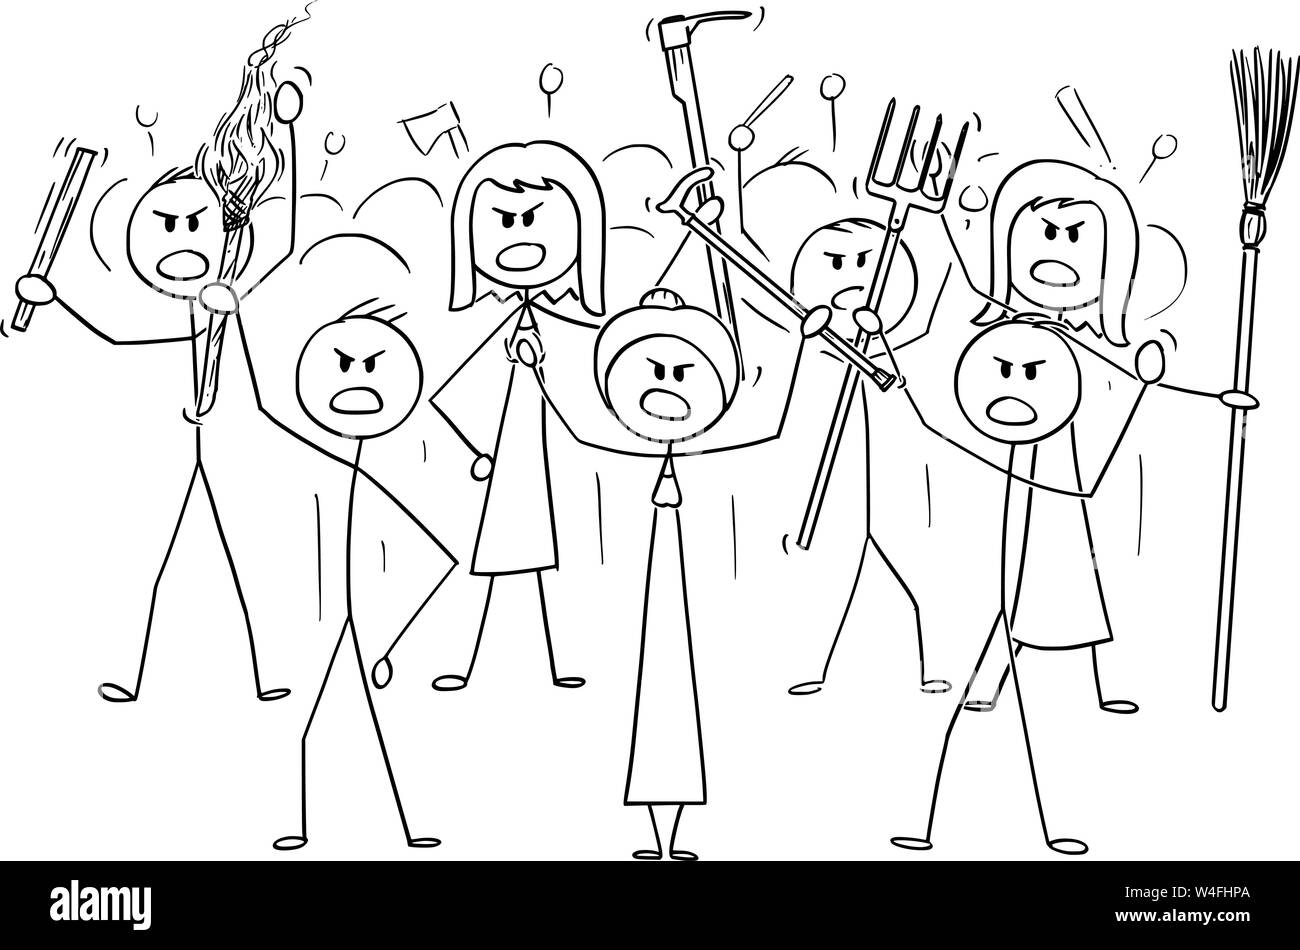 Vektor cartoon Strichmännchen Zeichnen konzeptionelle Darstellung der wütenden Mob Zeichen mit Taschenlampe und Tools wie Pitchfork als Waffen. Stock Vektor